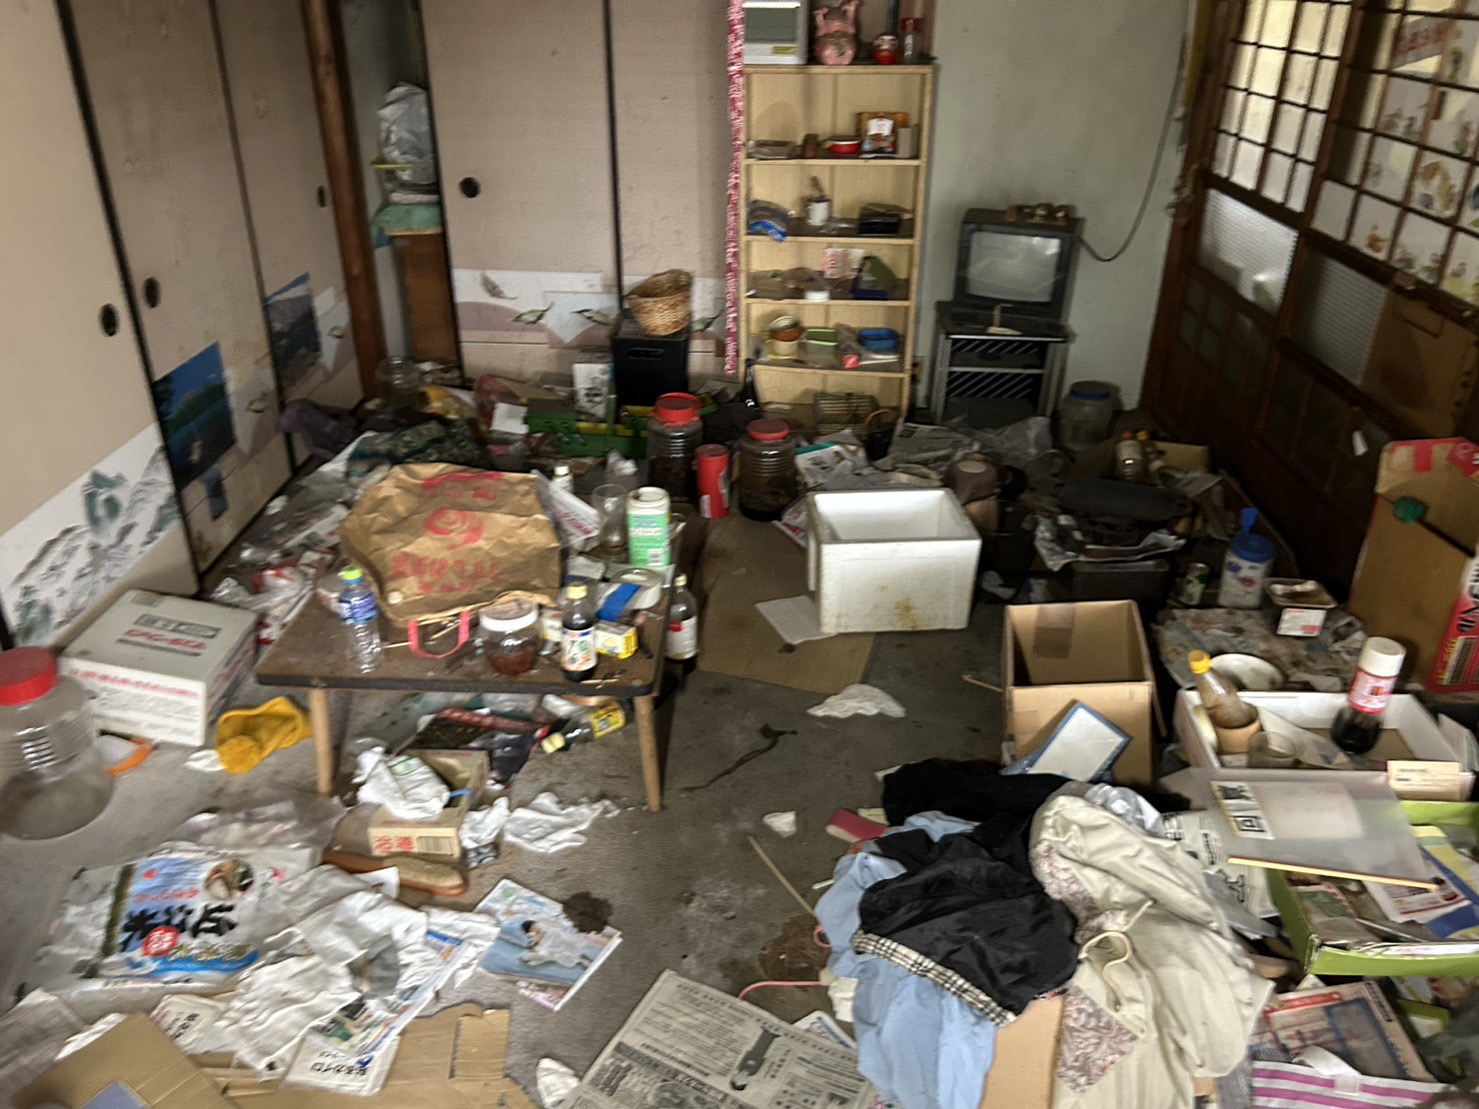 奈良県香芝市にて　家屋解体に伴う　残置物撤去作業を行ってまいりました。　いつも作業を頂戴しております解体業者様よりご依頼